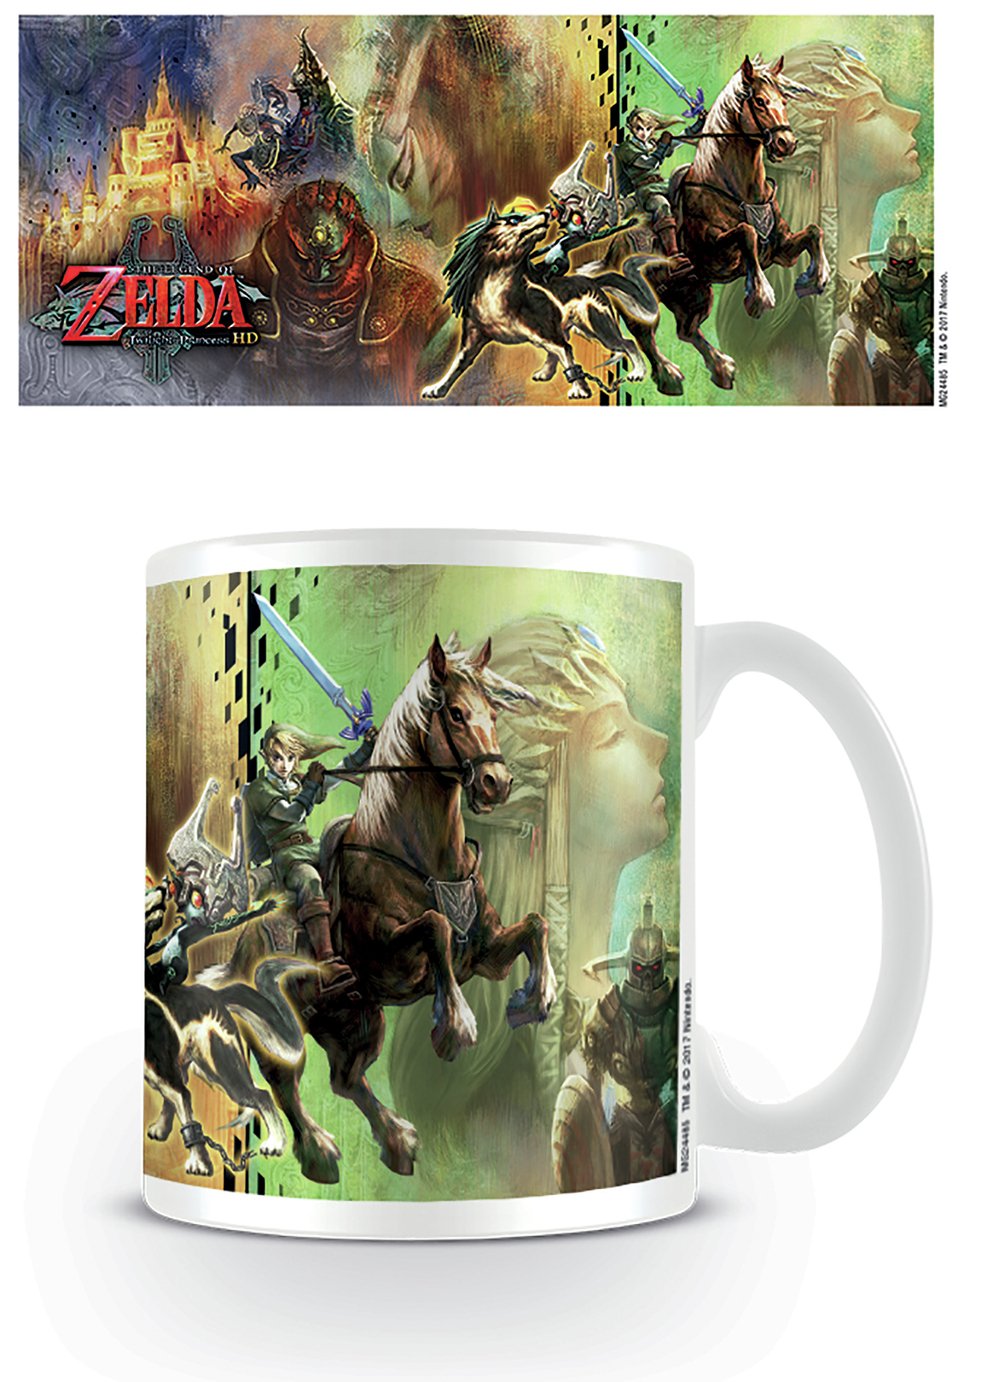 Legend of Zelda Twilight Princess Mug